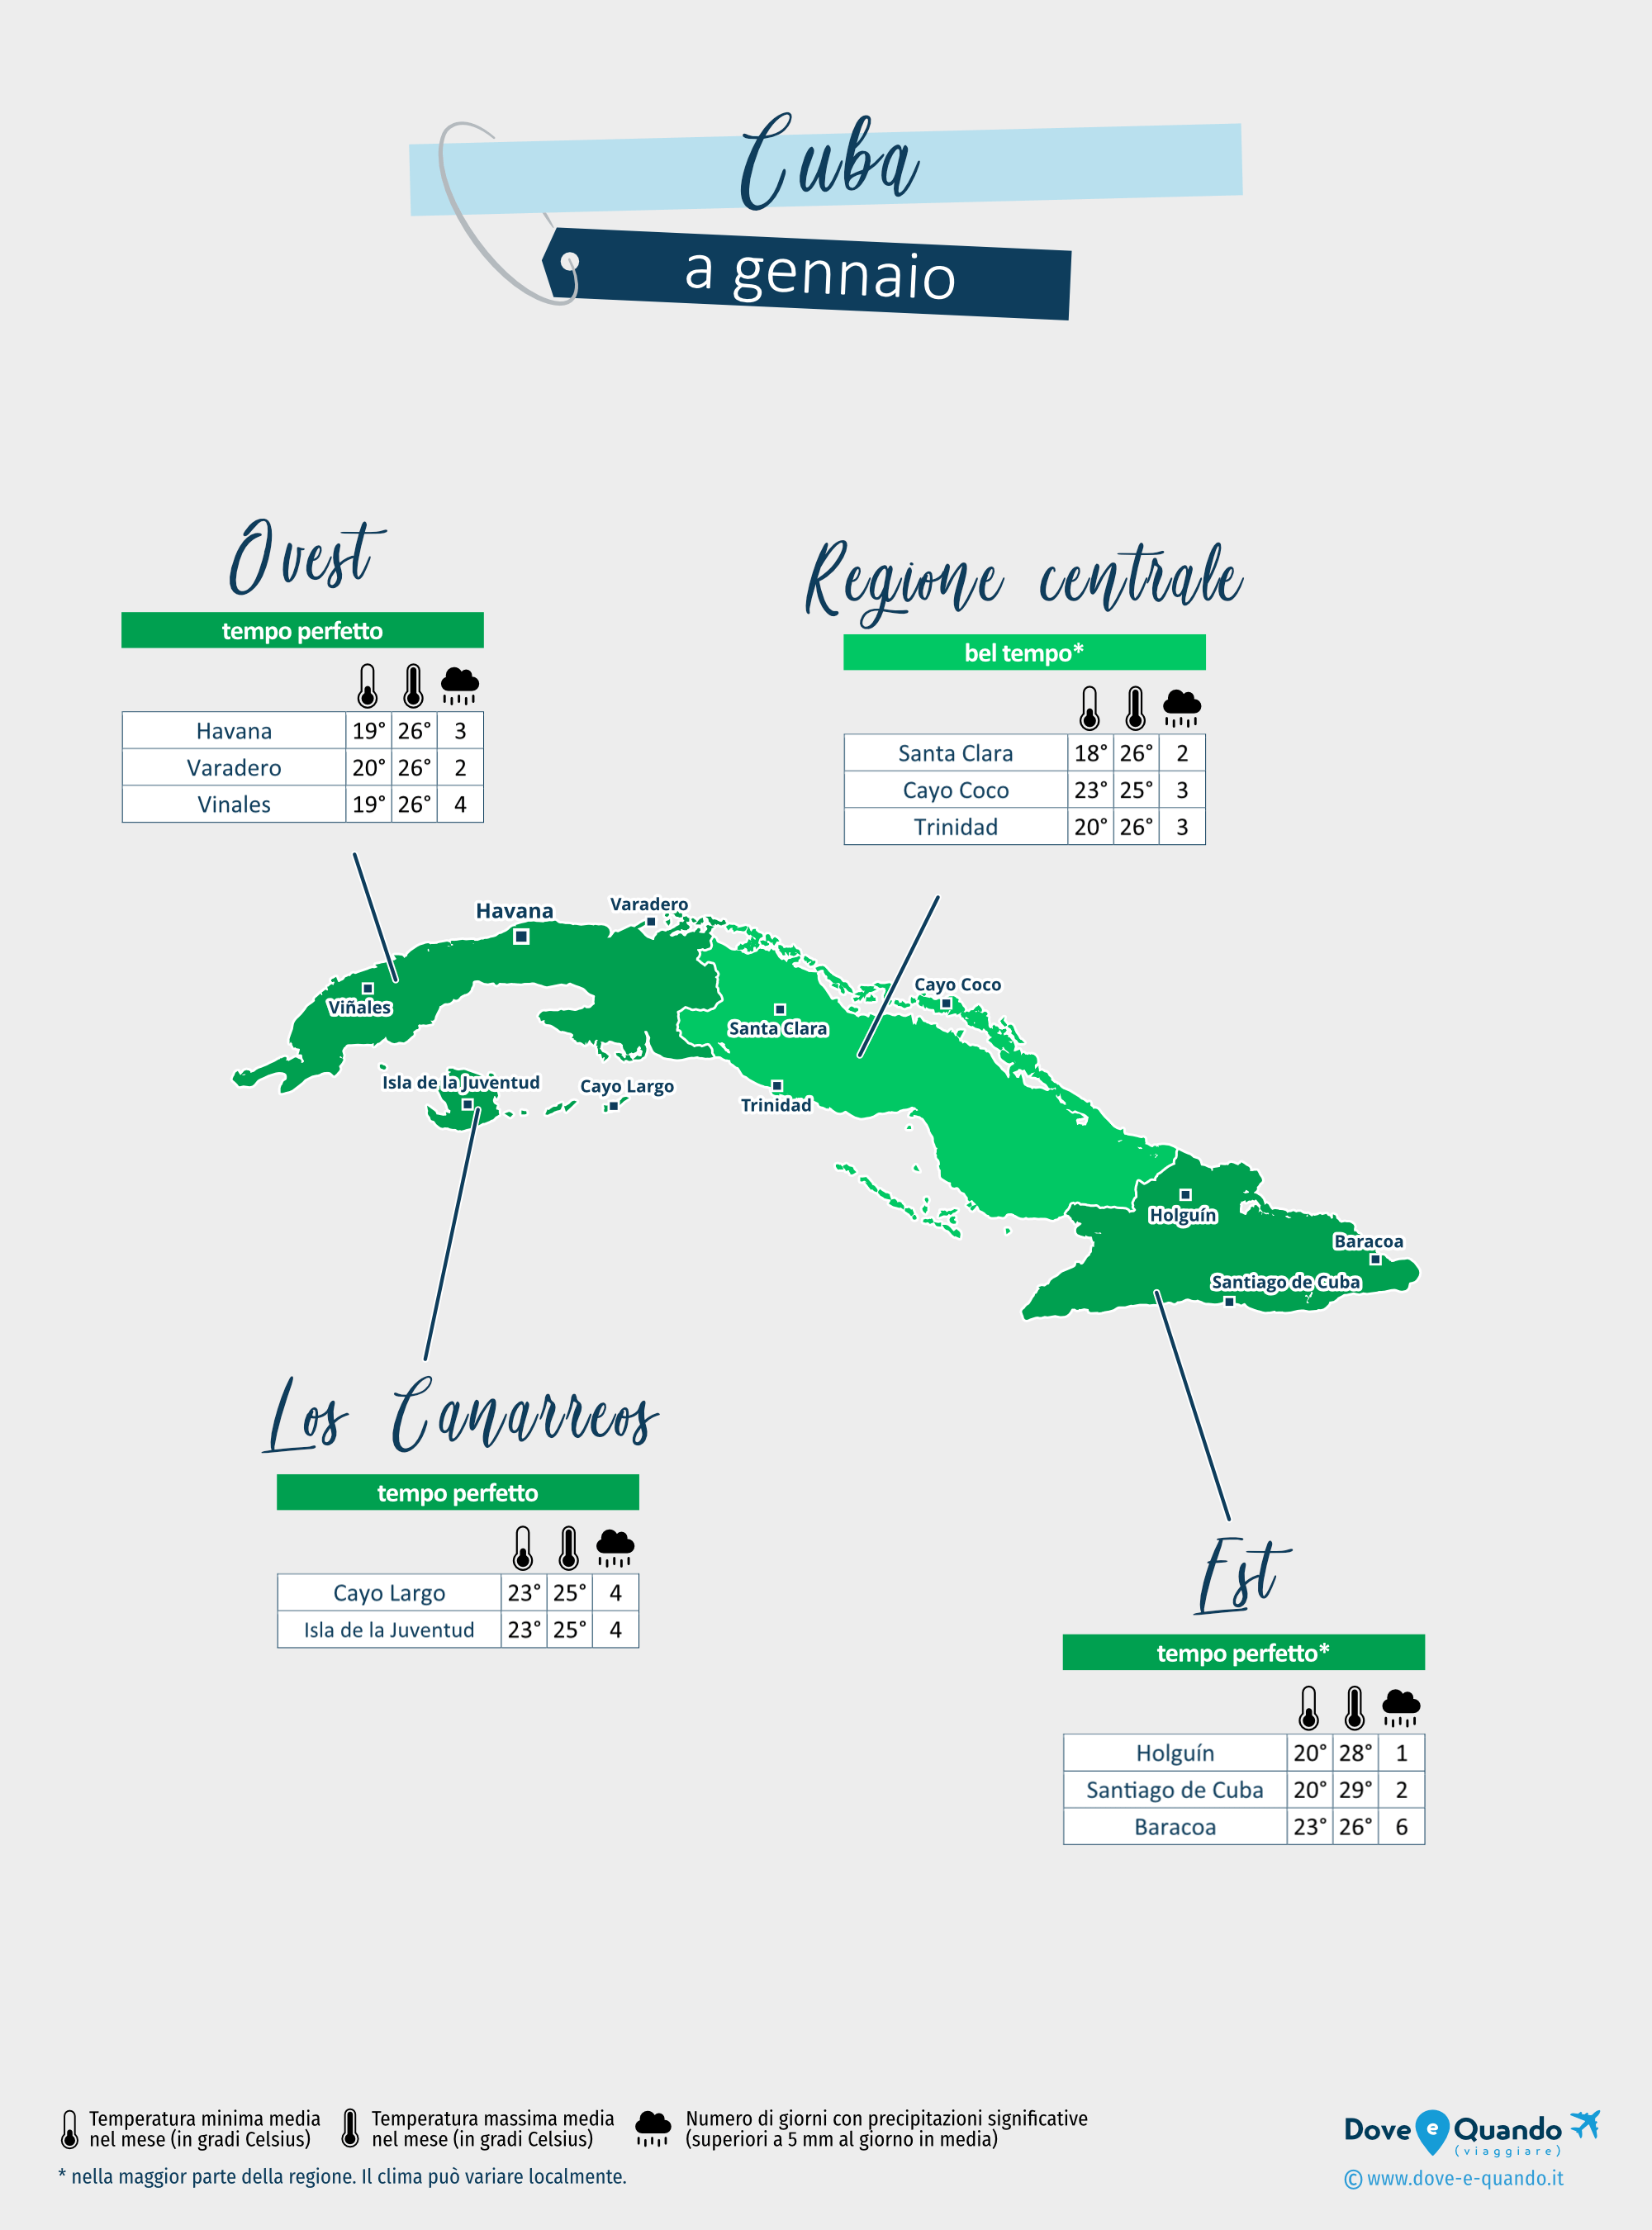 Cuba: mappa del meteo a gennaio nelle diverse regioni